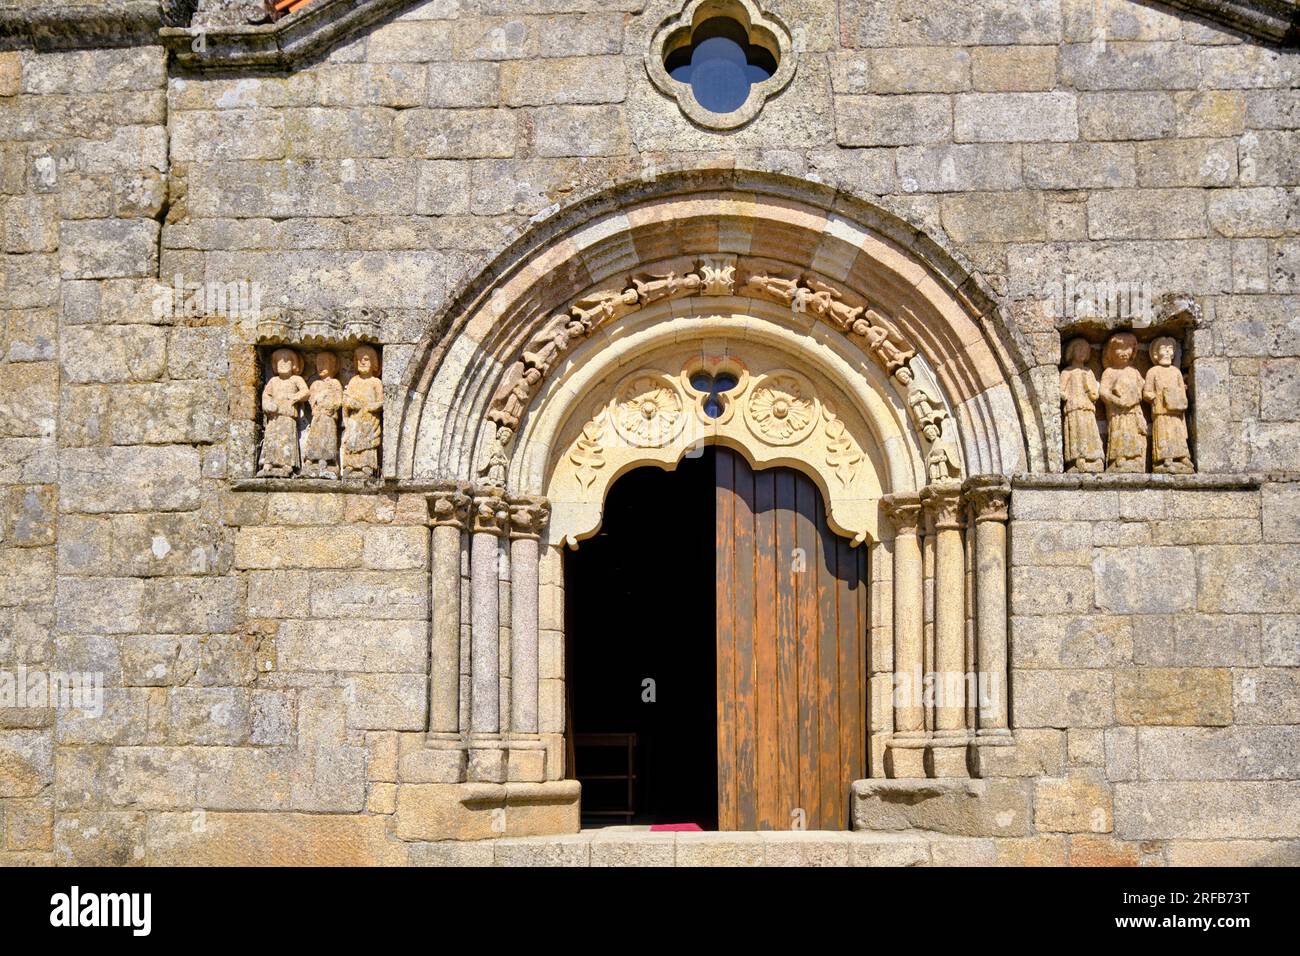 Portail de l'église romane Motherchurch, 12e siècle. Sernancelhe, Beira Alta. Portugal Banque D'Images